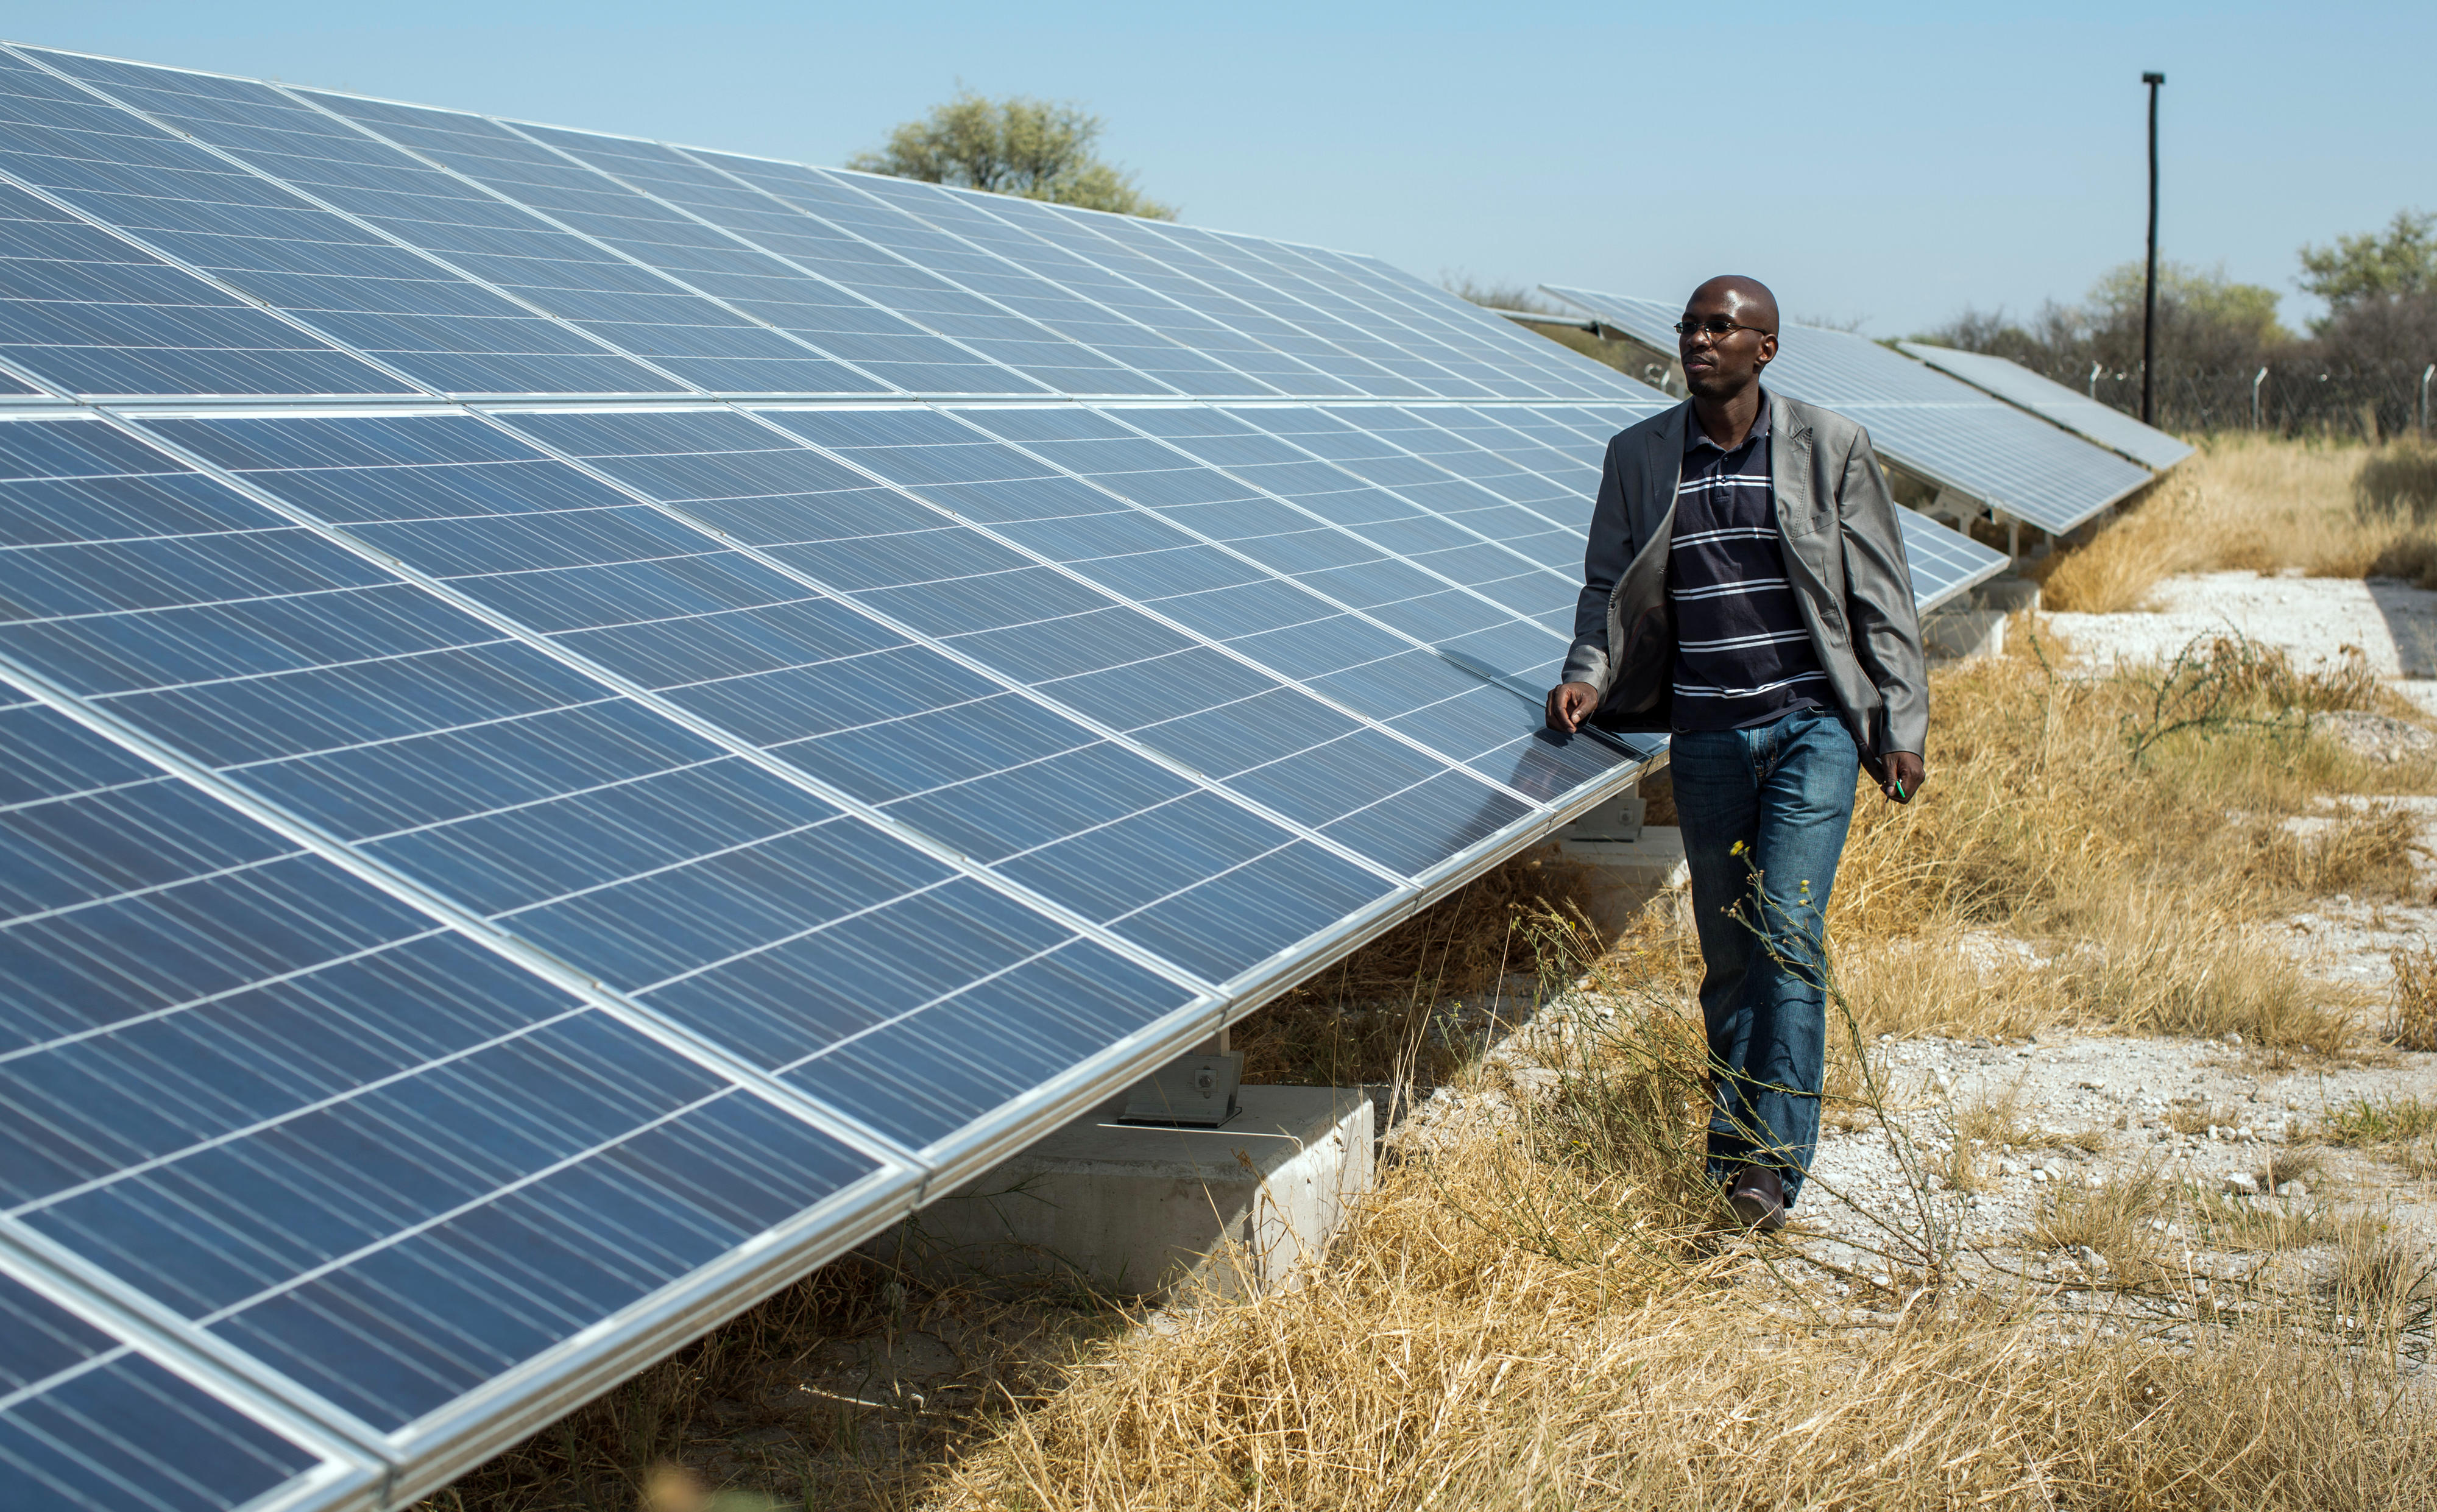 Ein Mann steht vor einer Solaranlage in Namibia, die aus zahlreichen Panelen besteht.